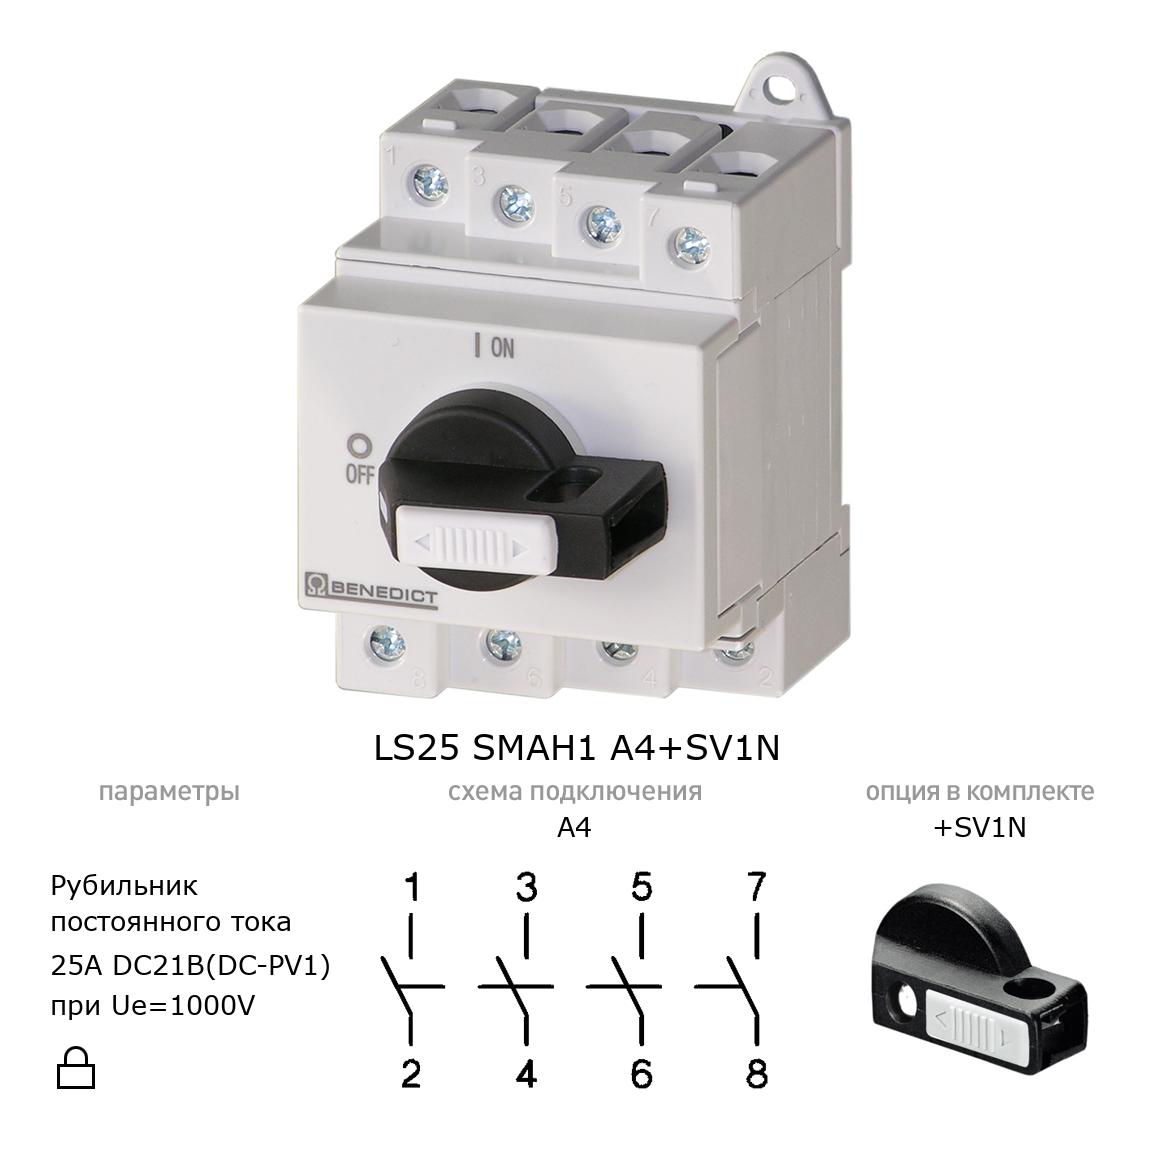 Выключатель нагрузки / рубильник для постоянного тока (DC) LS25 SMAH1 A4+SV1N BENEDICT